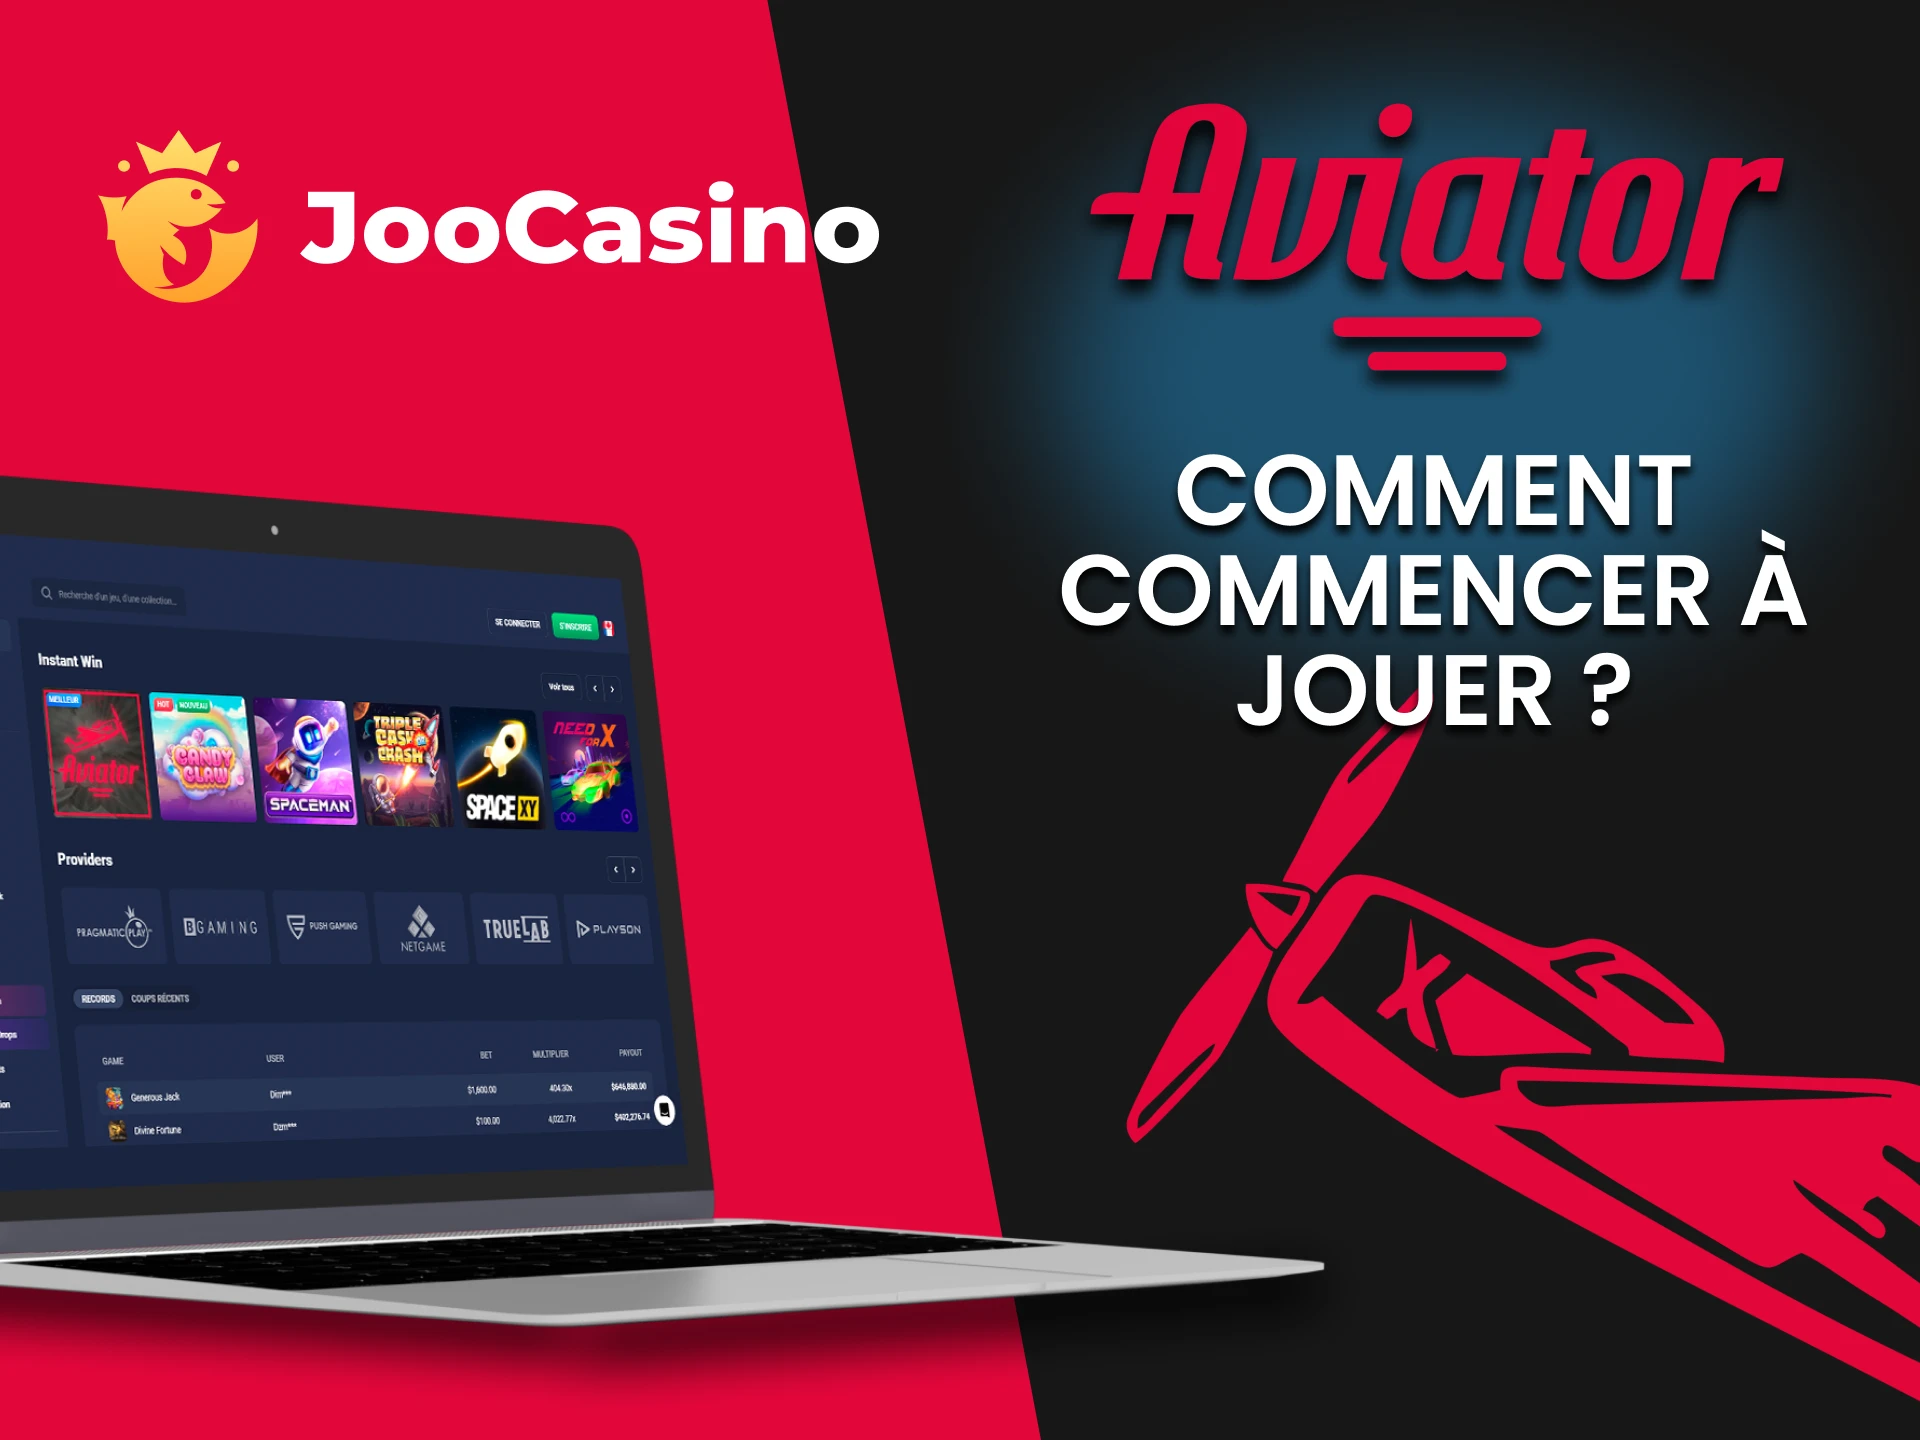 Accédez à la section Joo Casino pour jouer à Aviator.